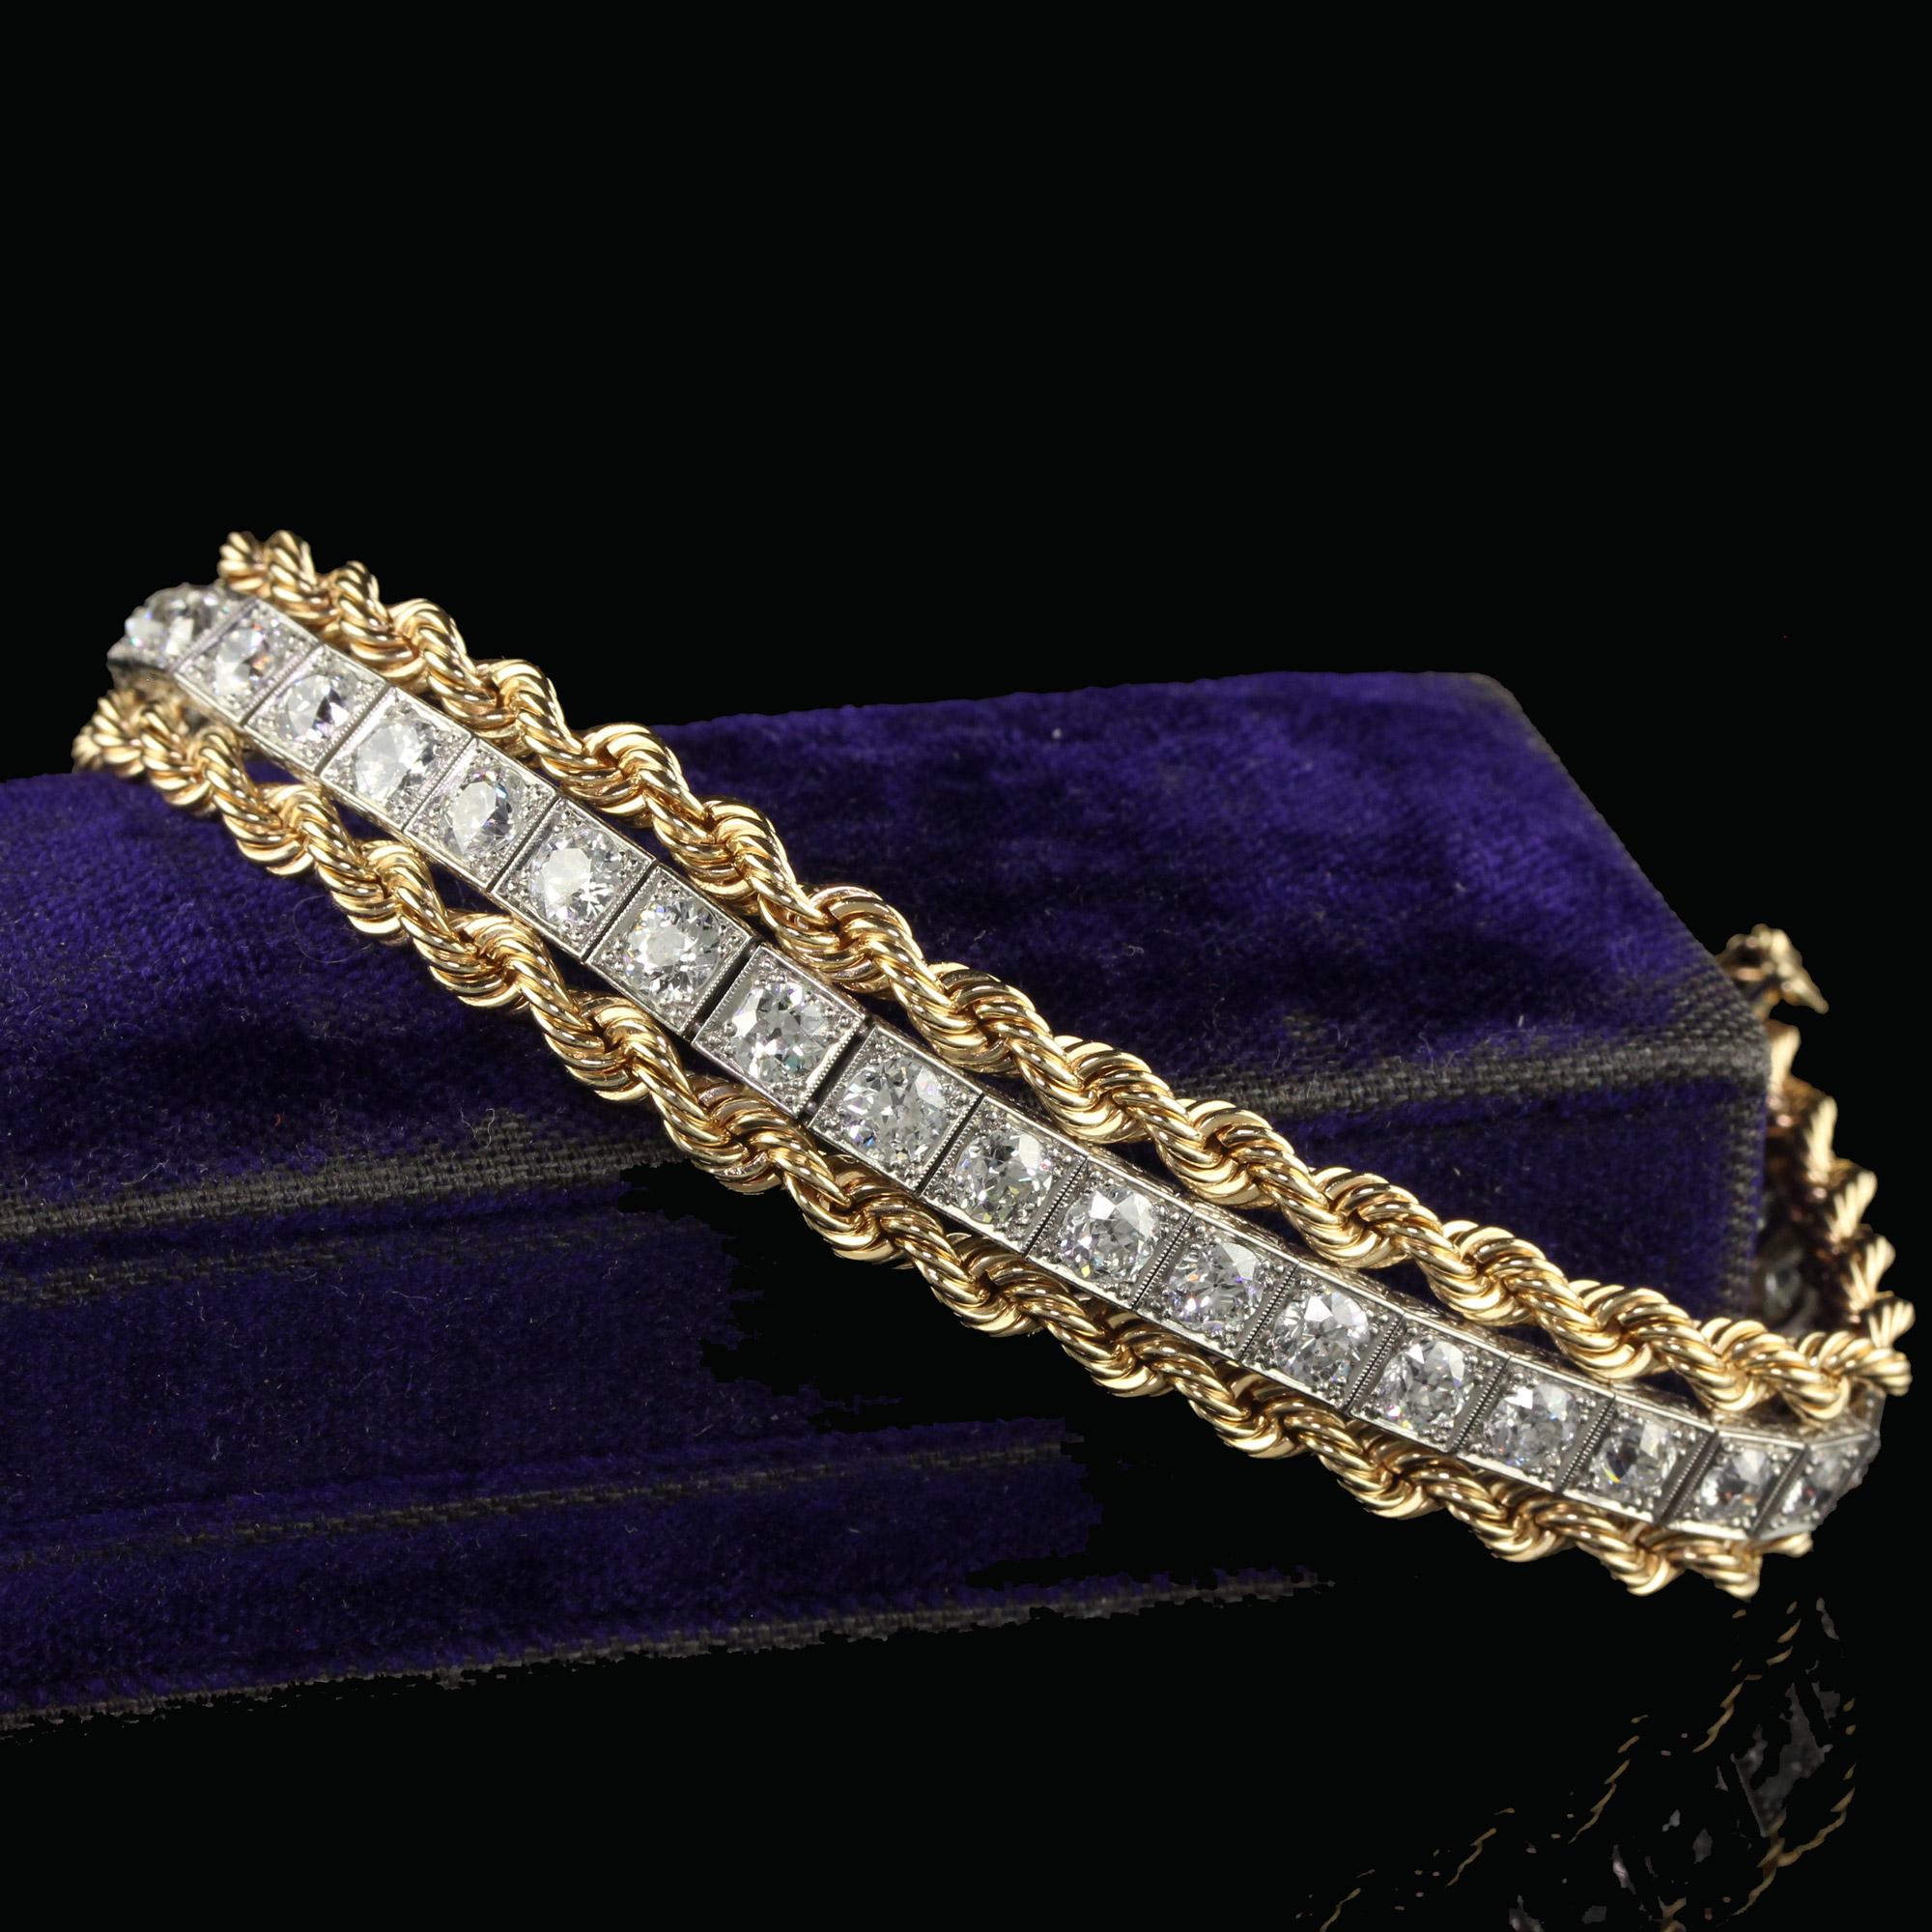 Schöne antike Retro Art Deco Platin Gelb Gold Old Euro Diamond Armband. Dieses wunderschöne Armband aus altem europäischem Diamanten ist aus Platin und Gelbgold gefertigt. Dieses Armband ist eine Verbindung zweier verschiedener Epochen, die